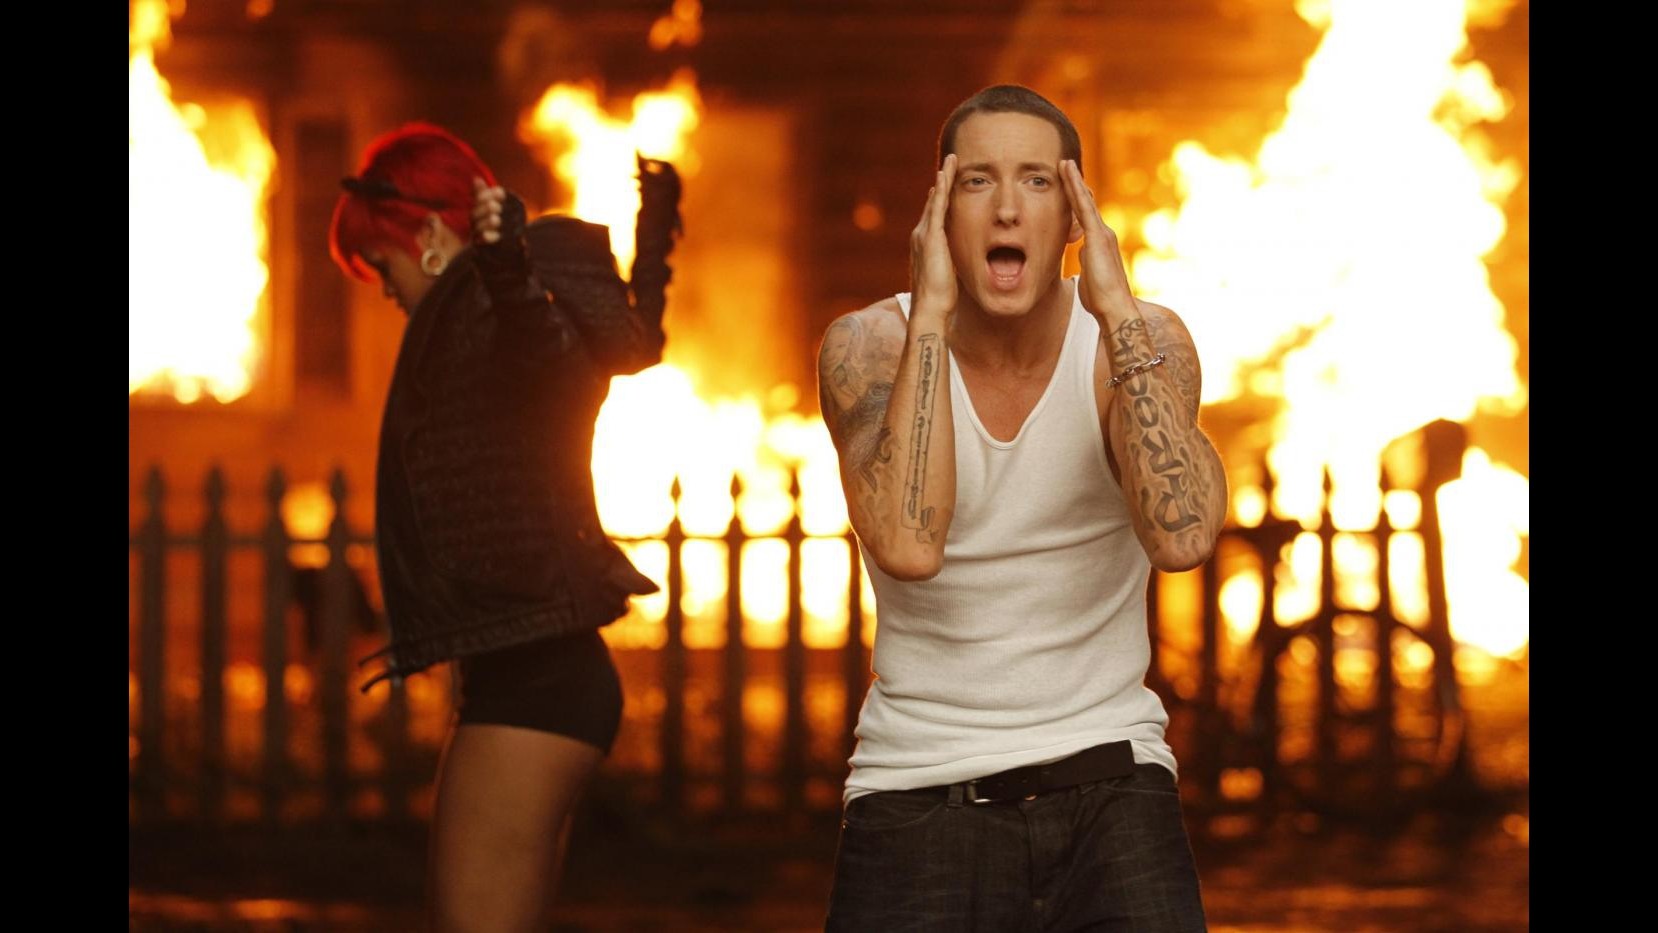 Esce nuovo singolo di Eminem con Rihanna, s’intitola ‘The Monster’